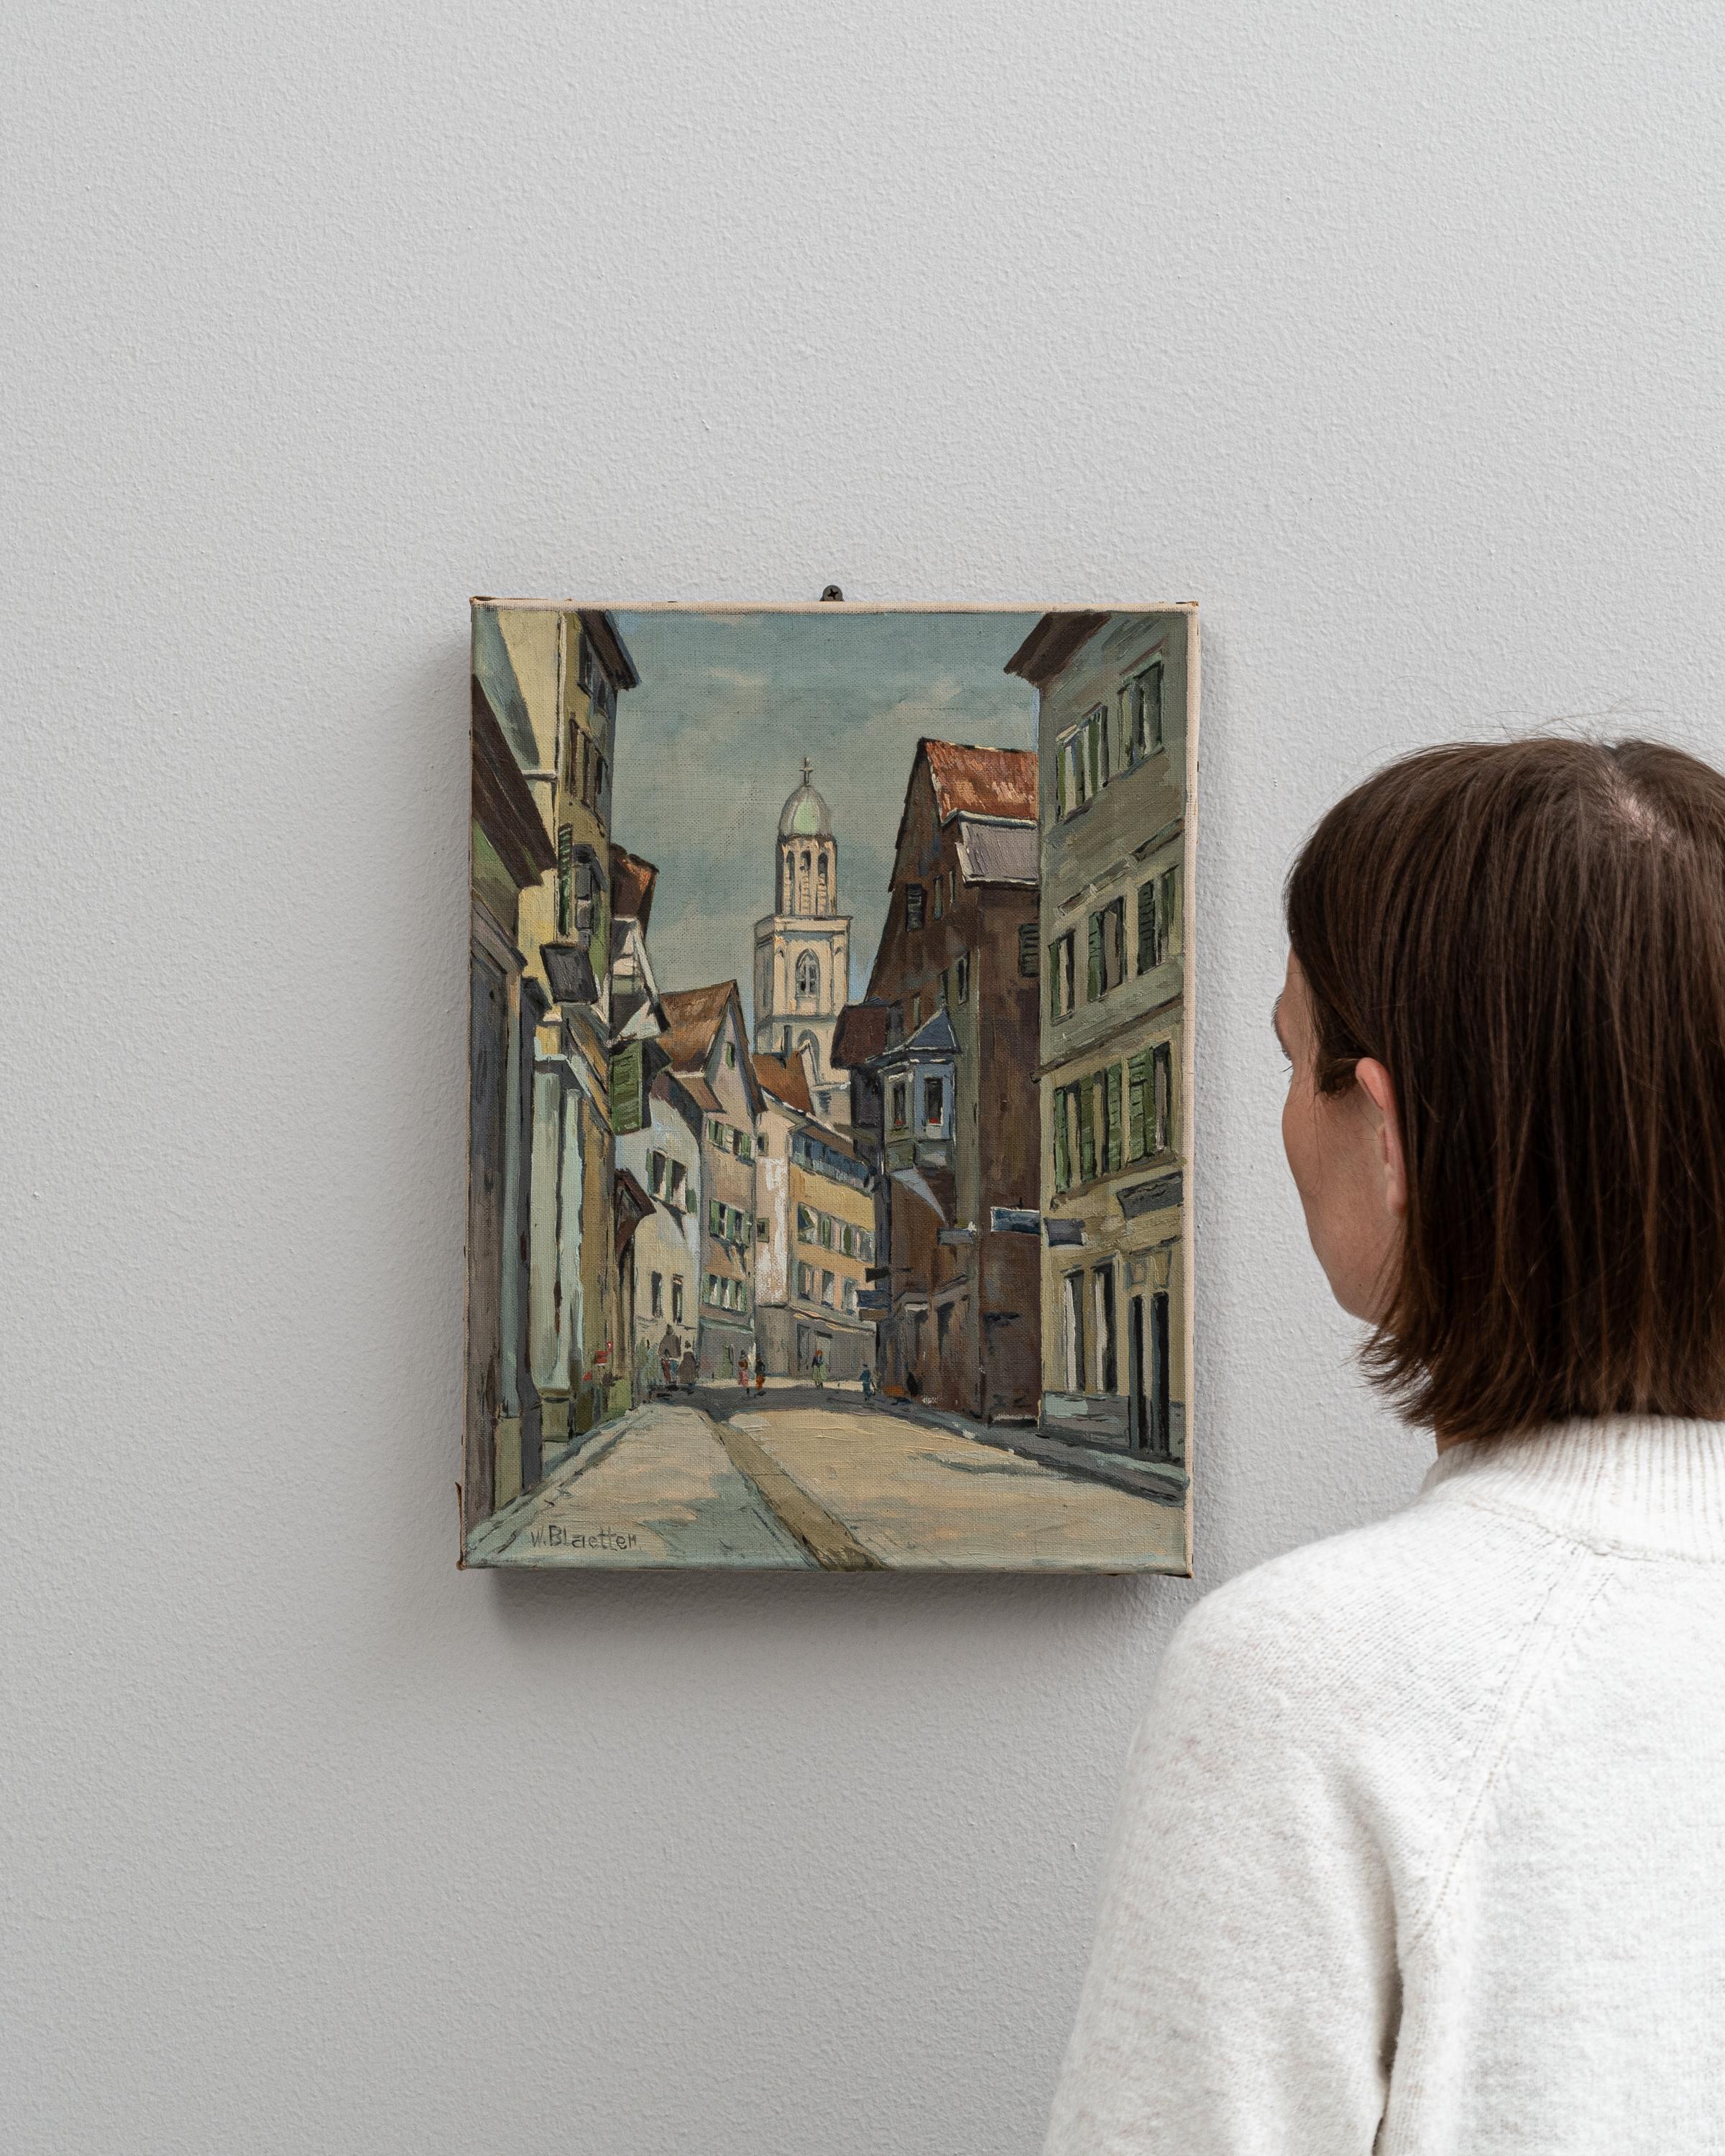 Cette charmante peinture belge du XXe siècle offre une représentation vivante d'une vieille rue européenne, probablement nichée dans une ville historique connue pour la richesse de sa culture et de son architecture. L'artiste capture l'essence de la